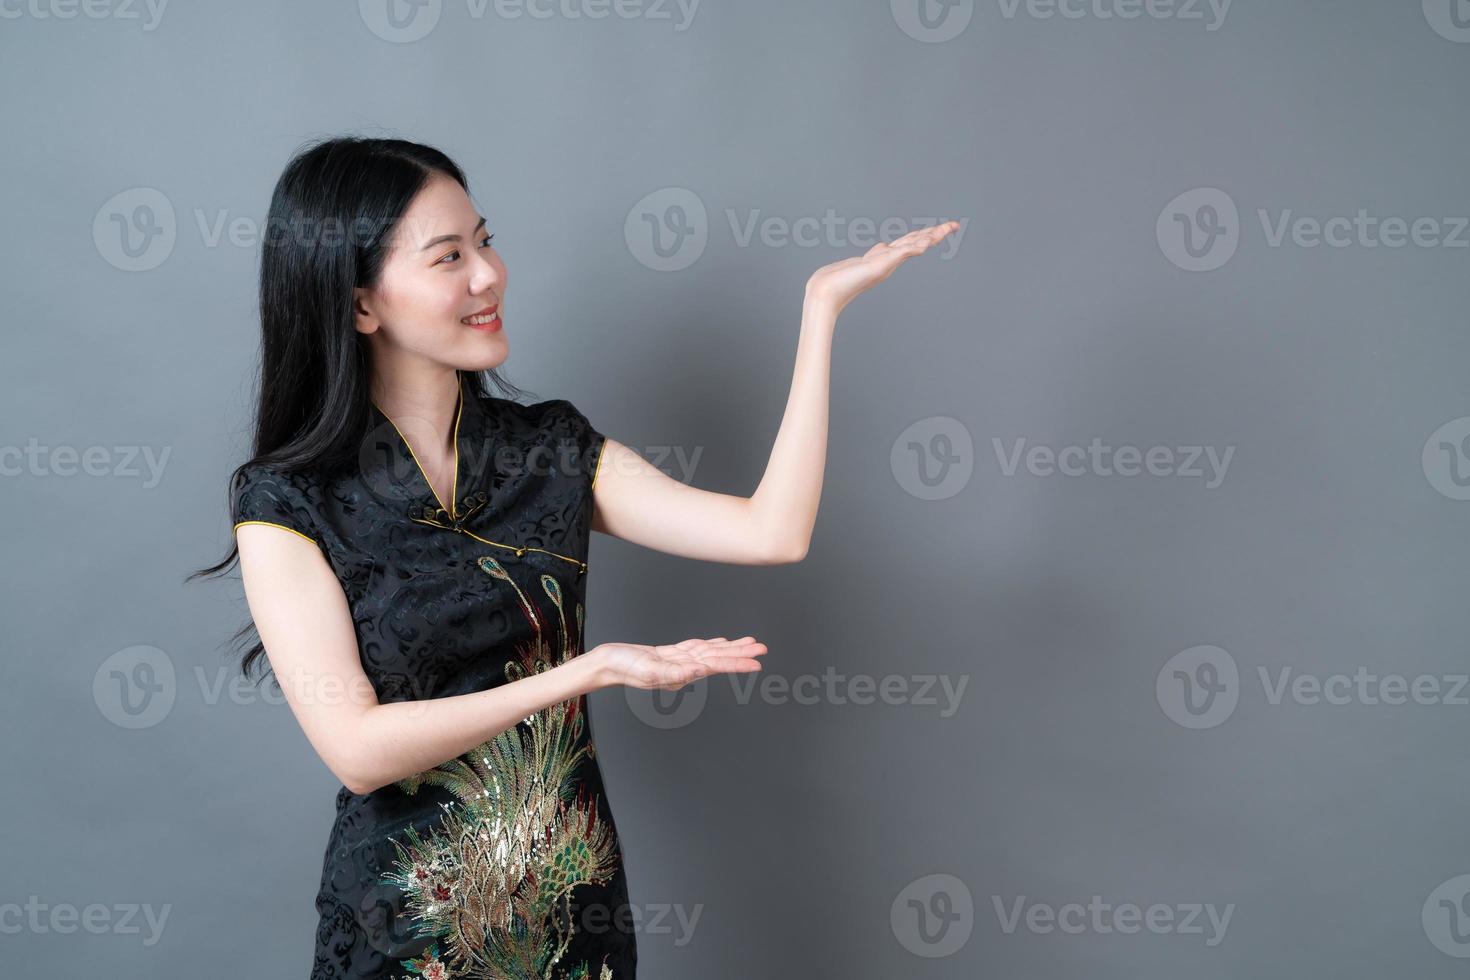 bela jovem asiática usa um vestido tradicional chinês com a mão se apresentando na lateral foto